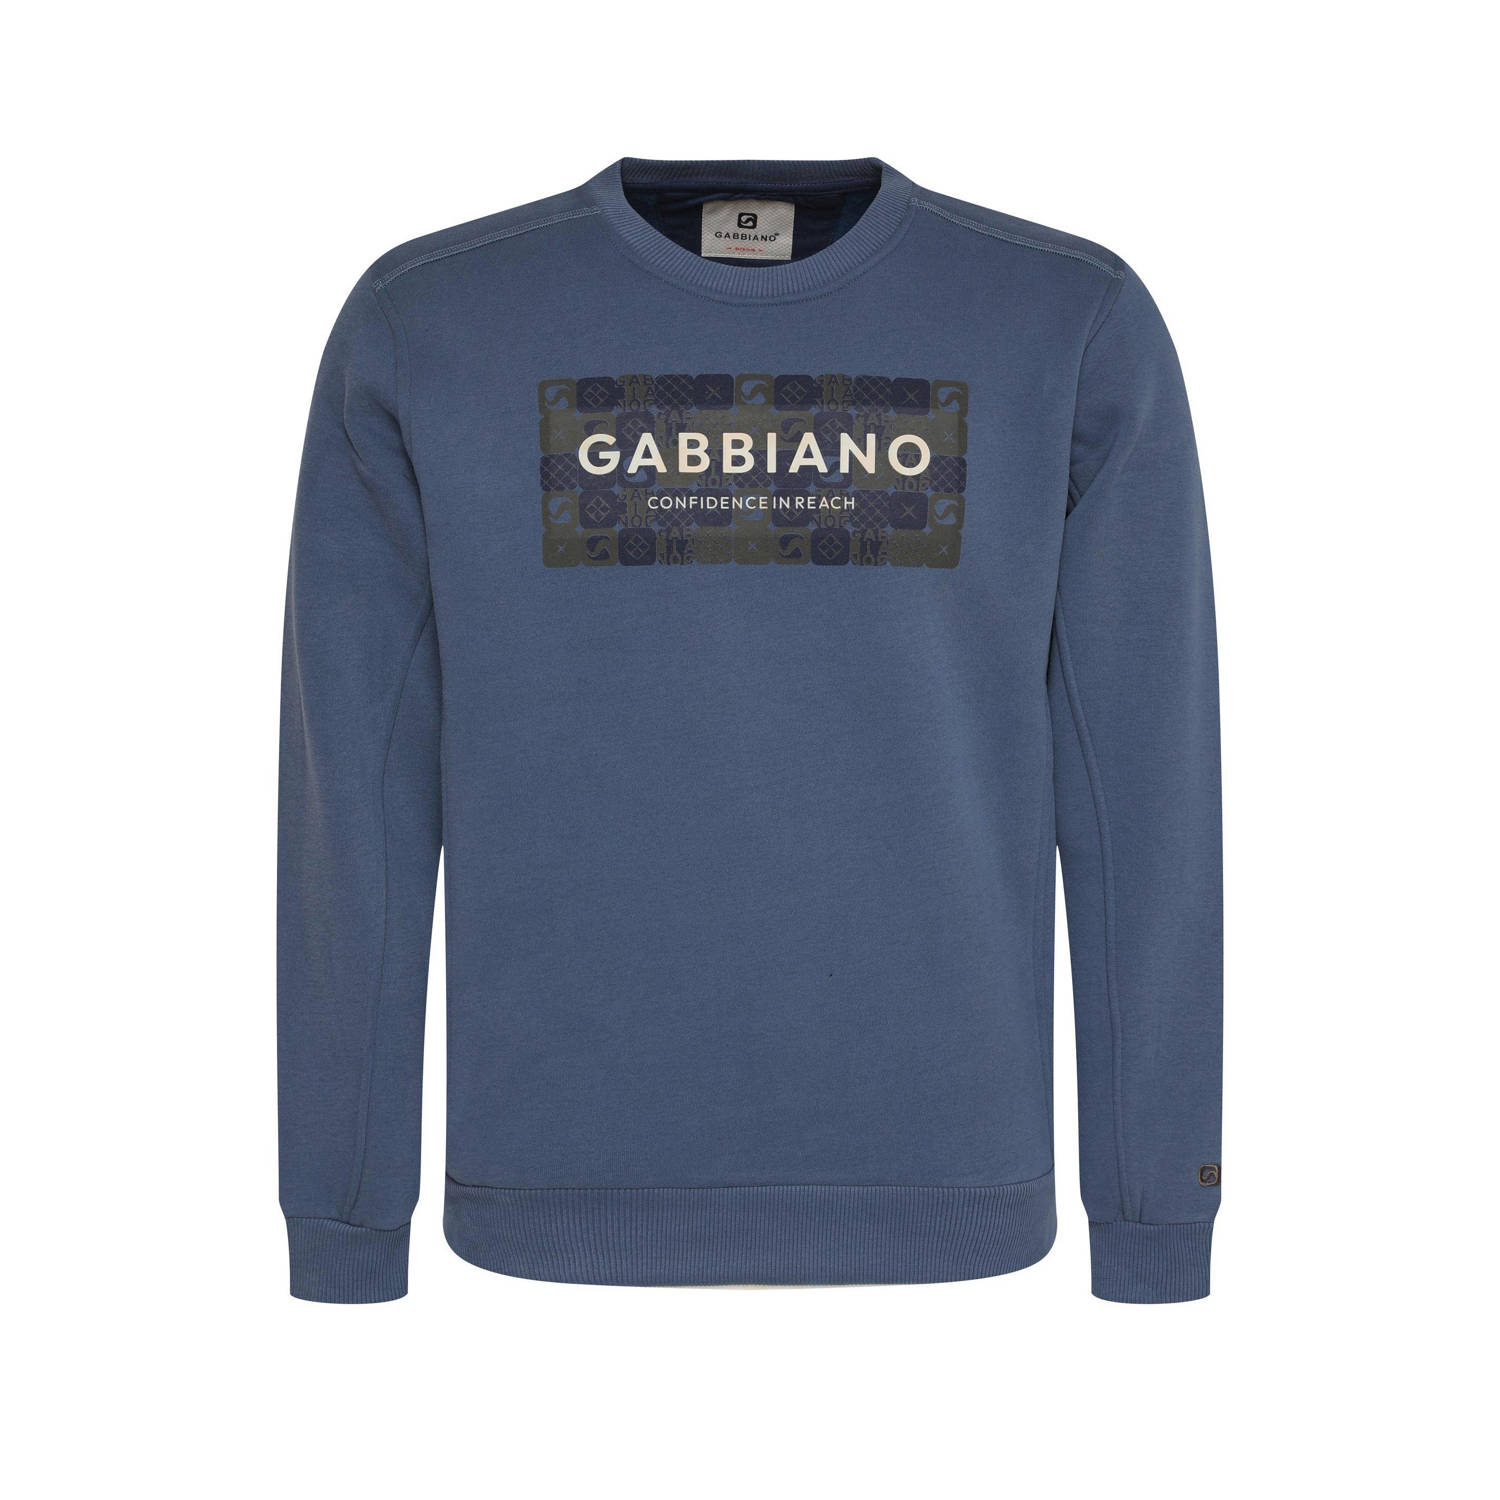 GABBIANO sweater met printopdruk indigo